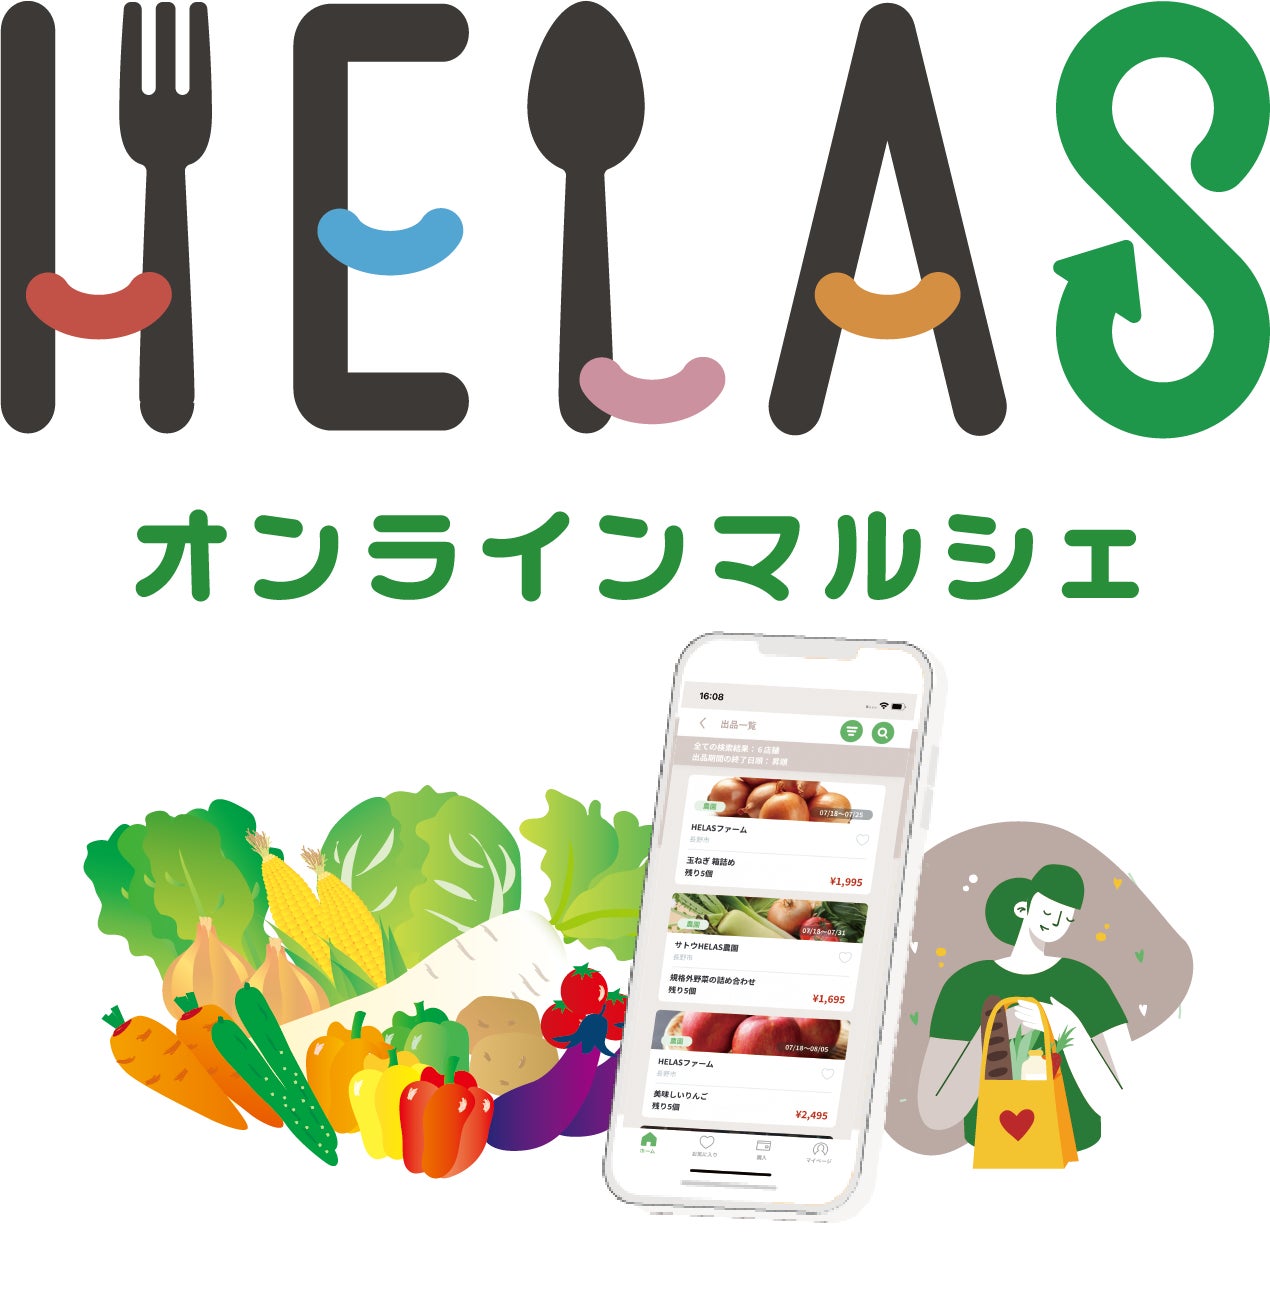 信州産の規格外野菜＆果物を全国にお届け～長野県の新聞社がヤマト運輸とタッグを組んで農家を支援。食品ロス削減を支援するスマートフォンアプリ 『HELAS(ヘラス)オンラインマルシェ』の提供を開始